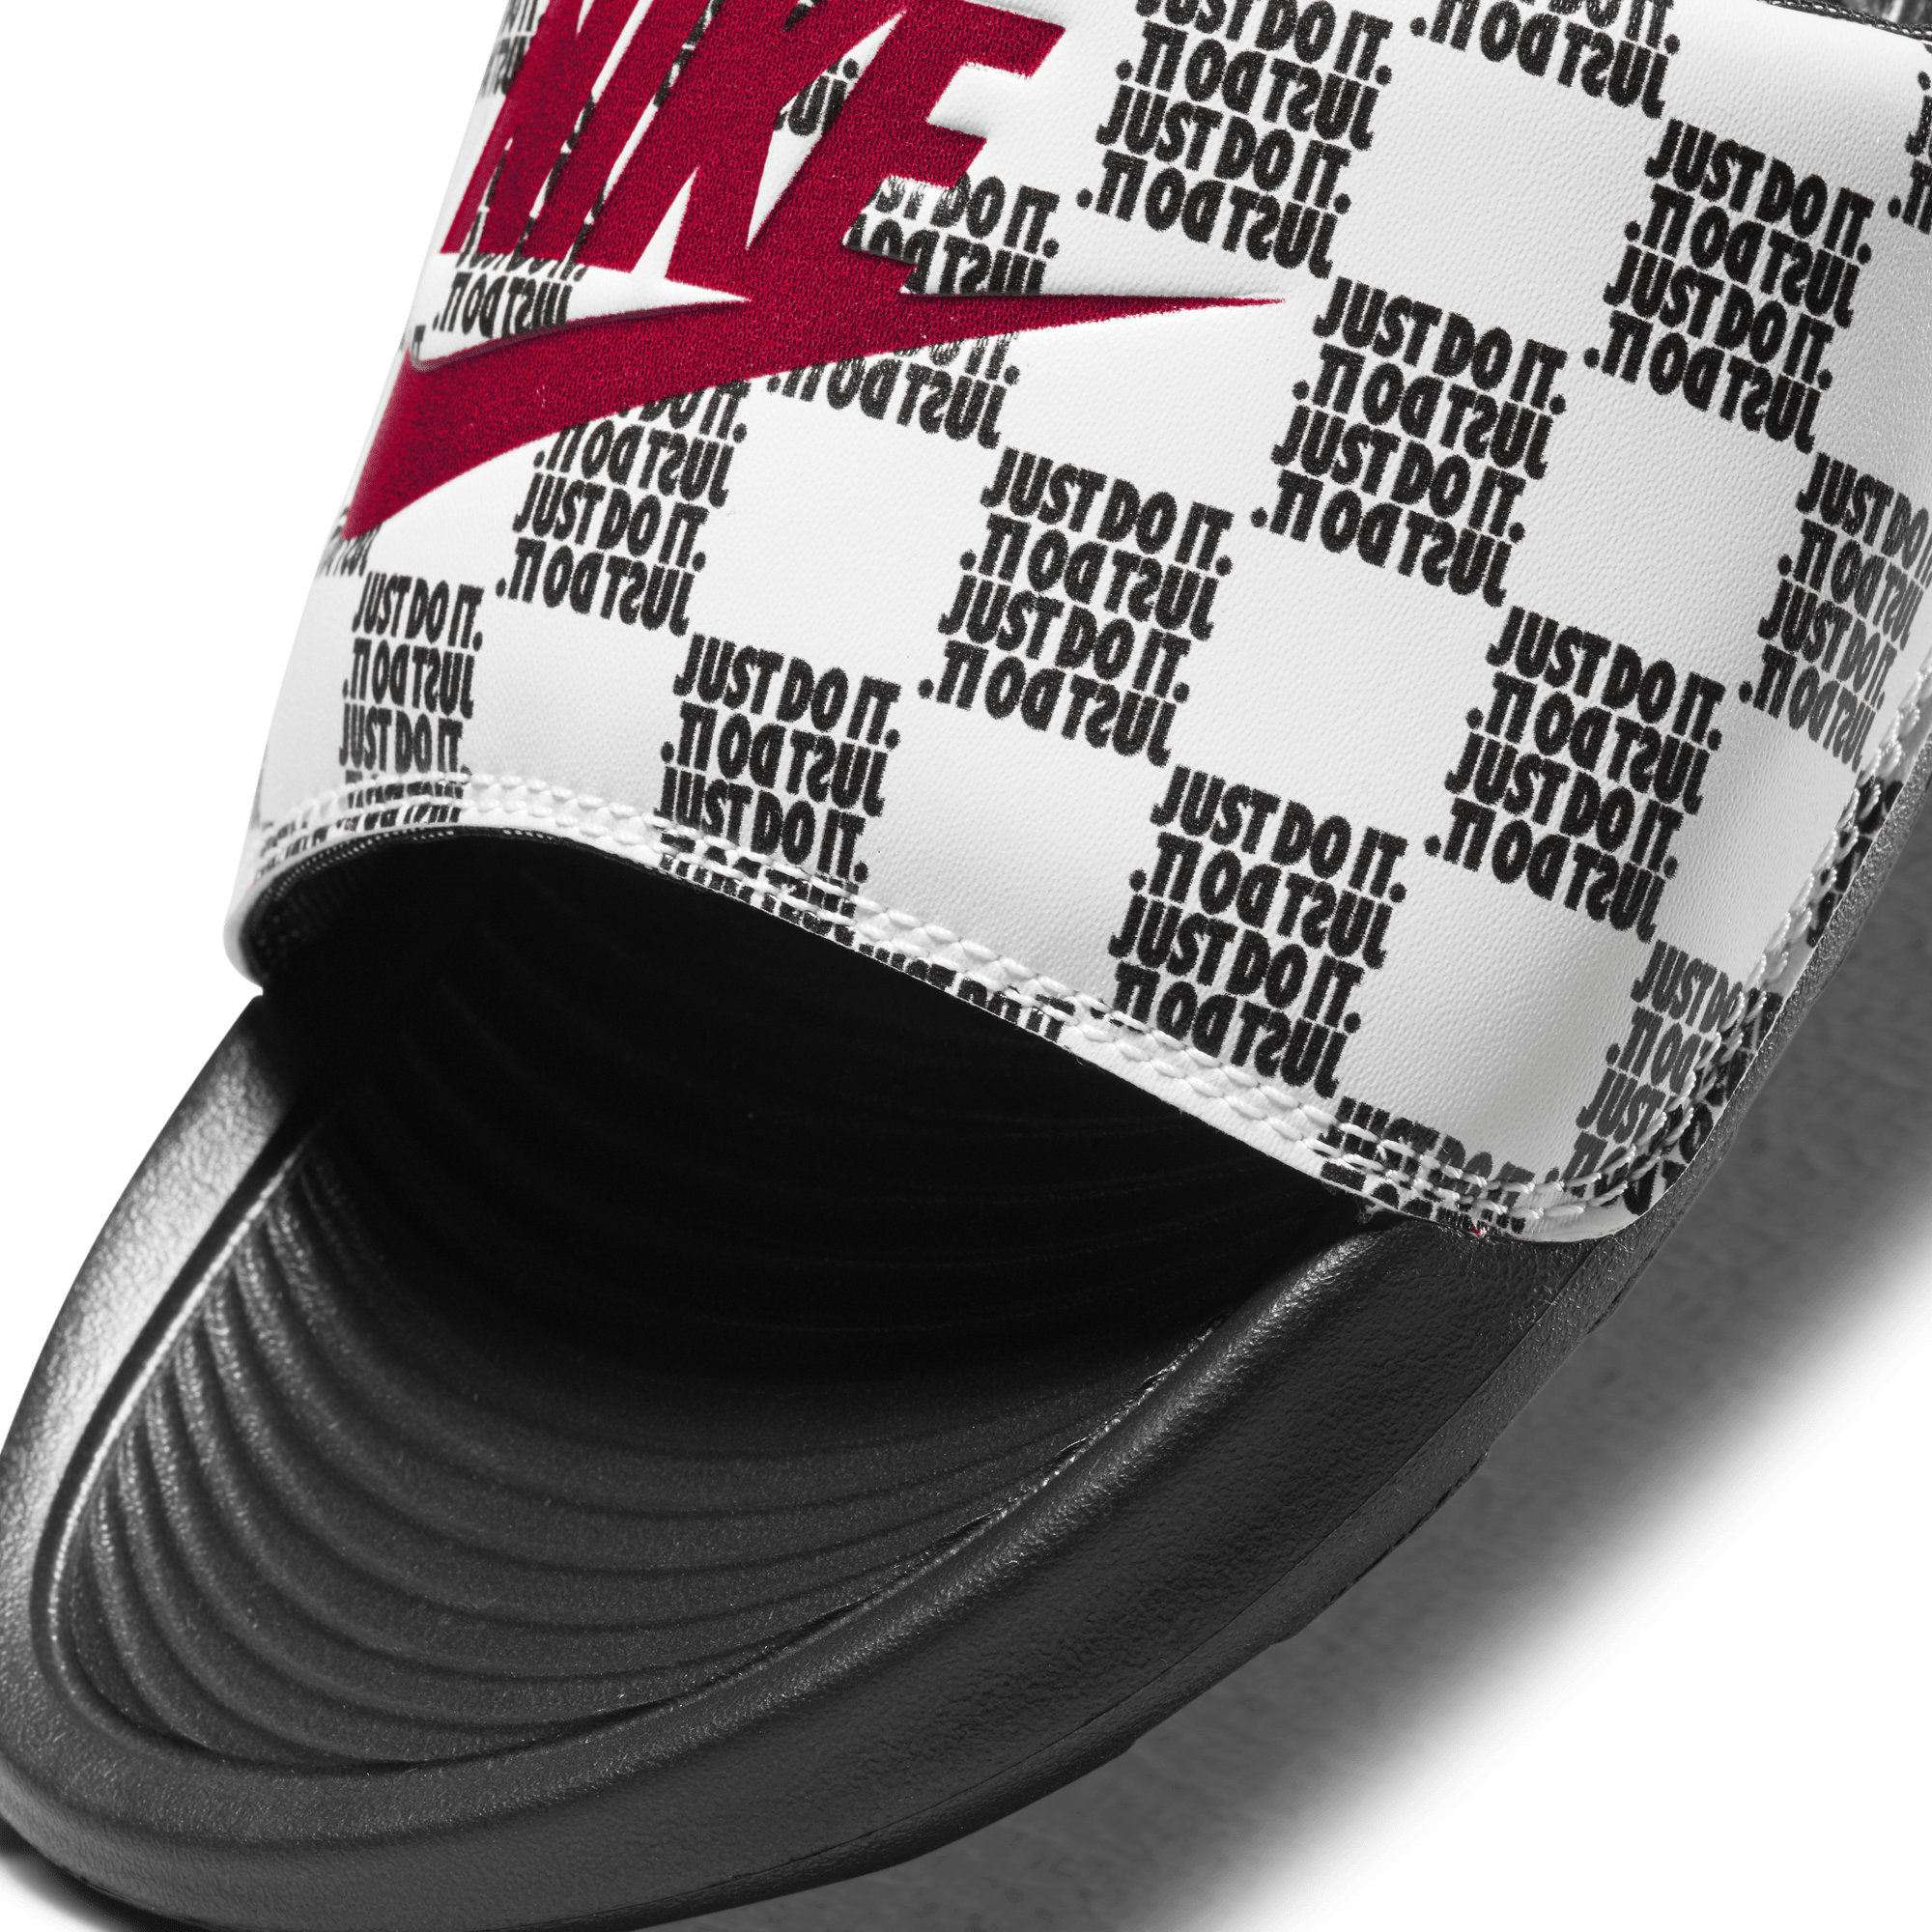 Nike FOOTWEAR Nike Victori One Printed Slide - Men's